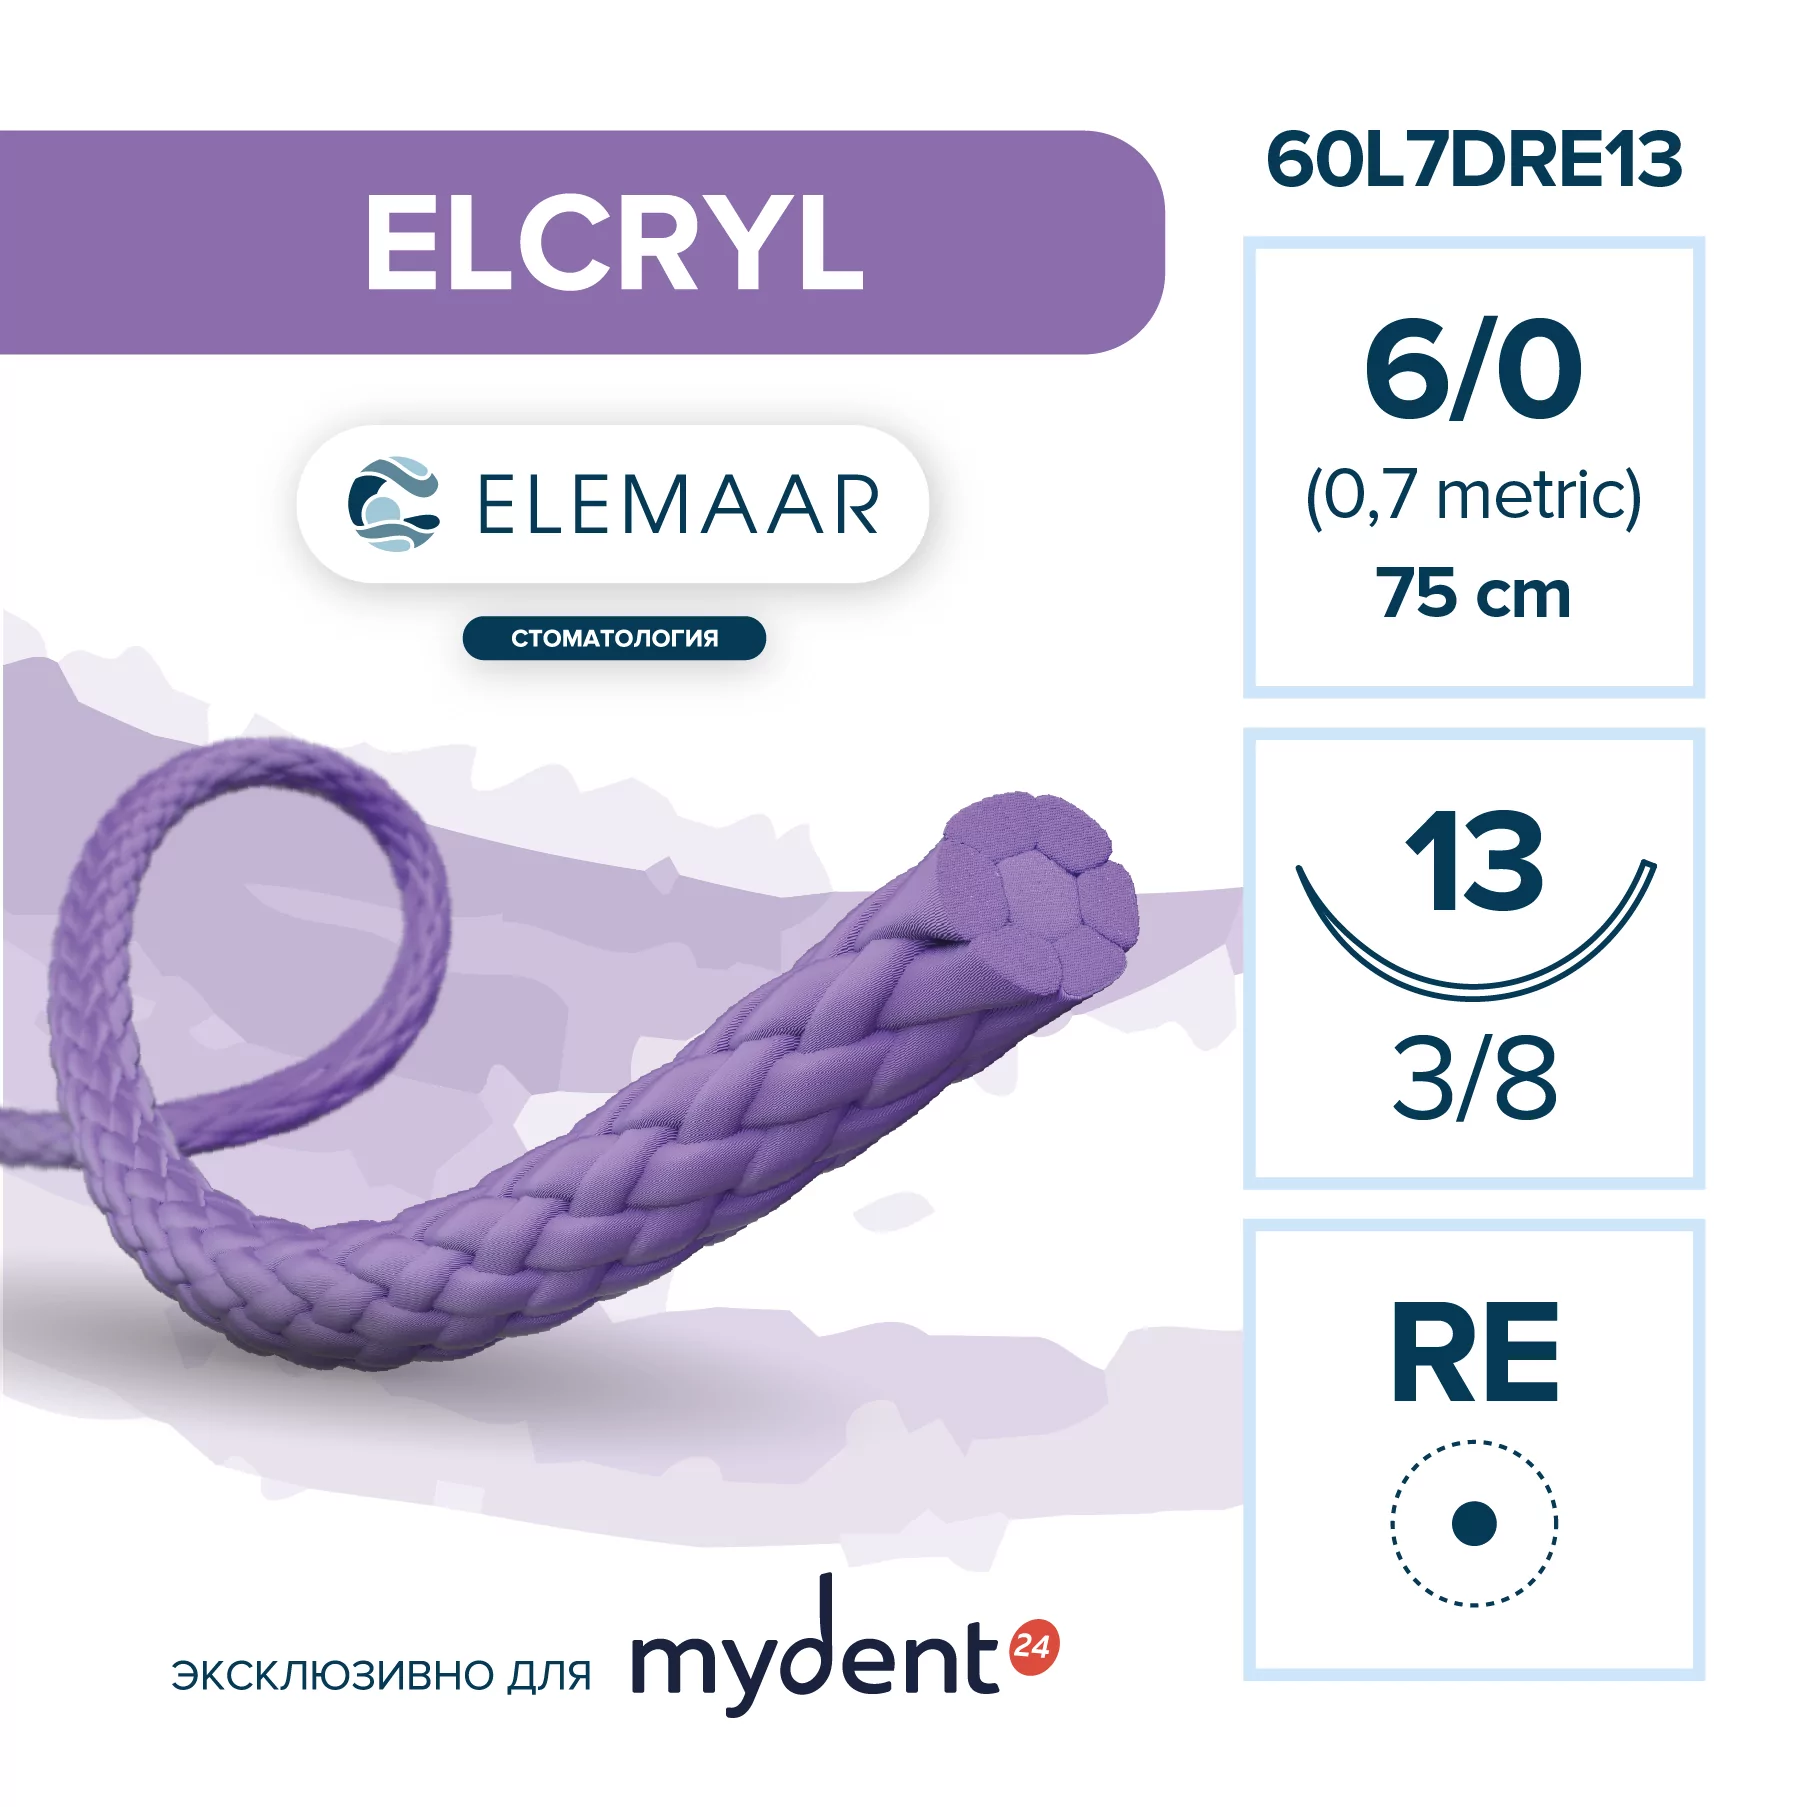 Шовный материал ELCRYL 6/0 (12 шт, 75 см, 3/8, 13 мм, колющая с квадратным телом)